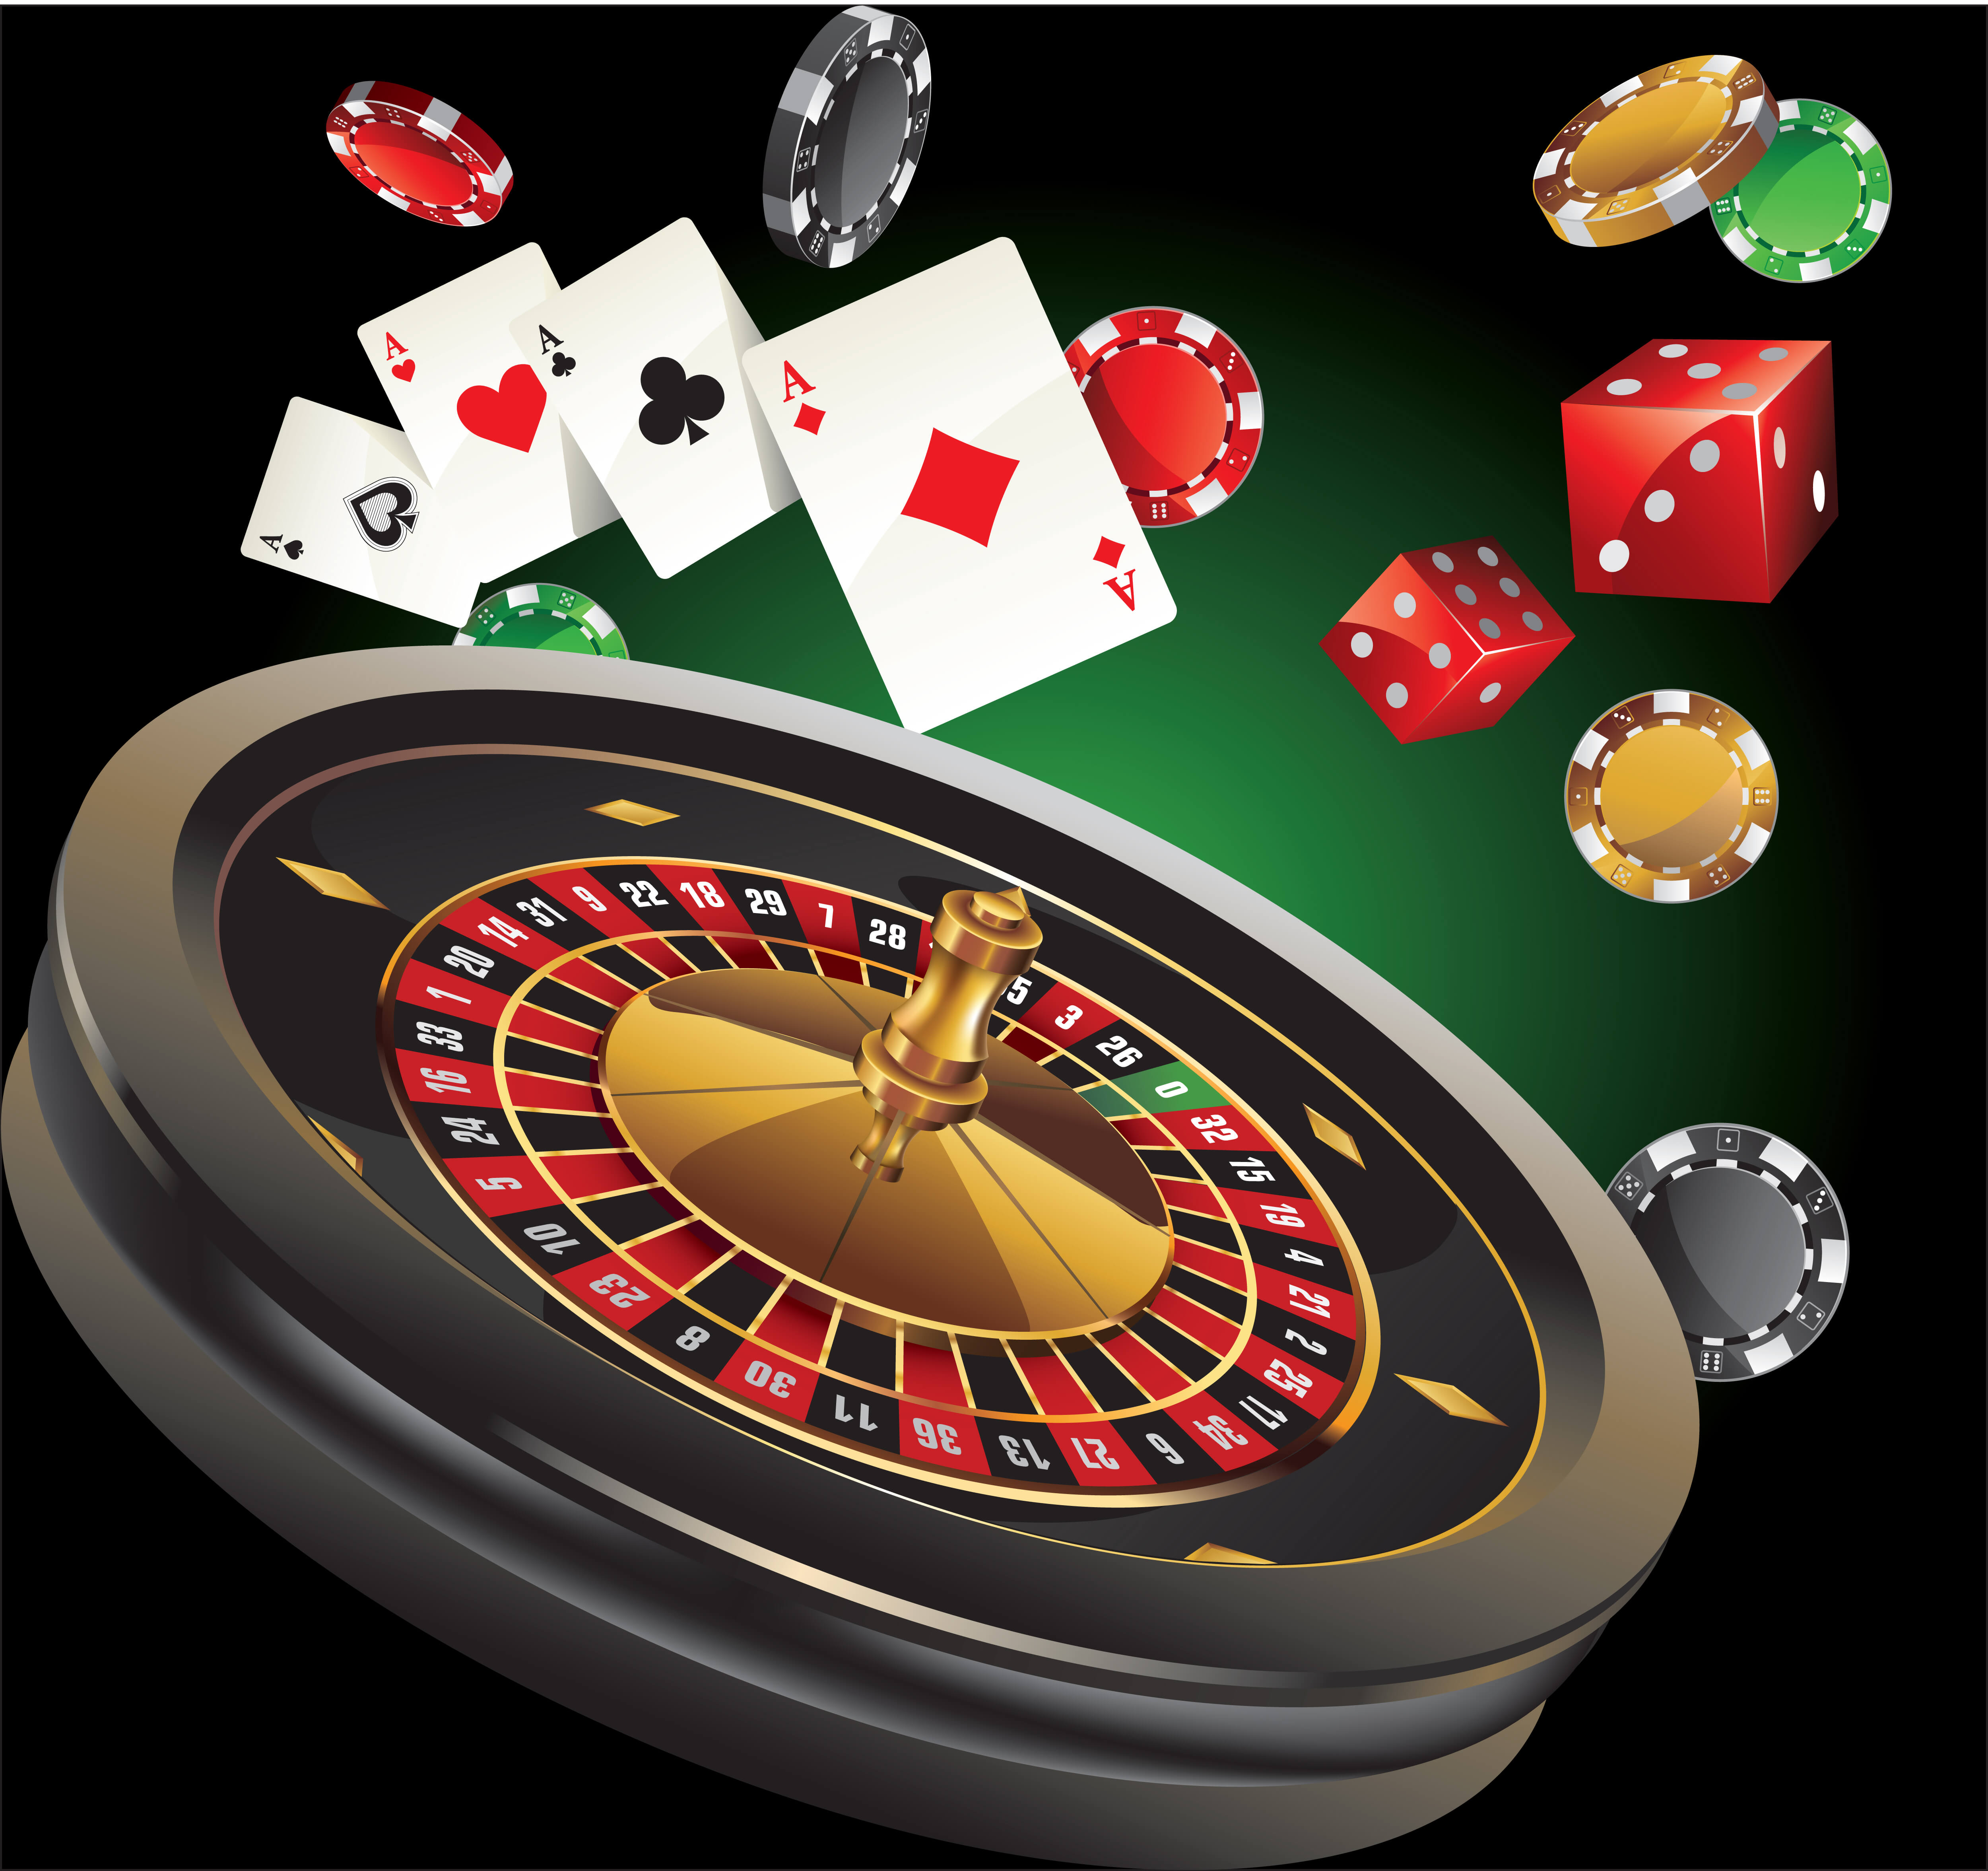 Impuestos por ganancias en casino juegos de gratis Guatemala - 20750